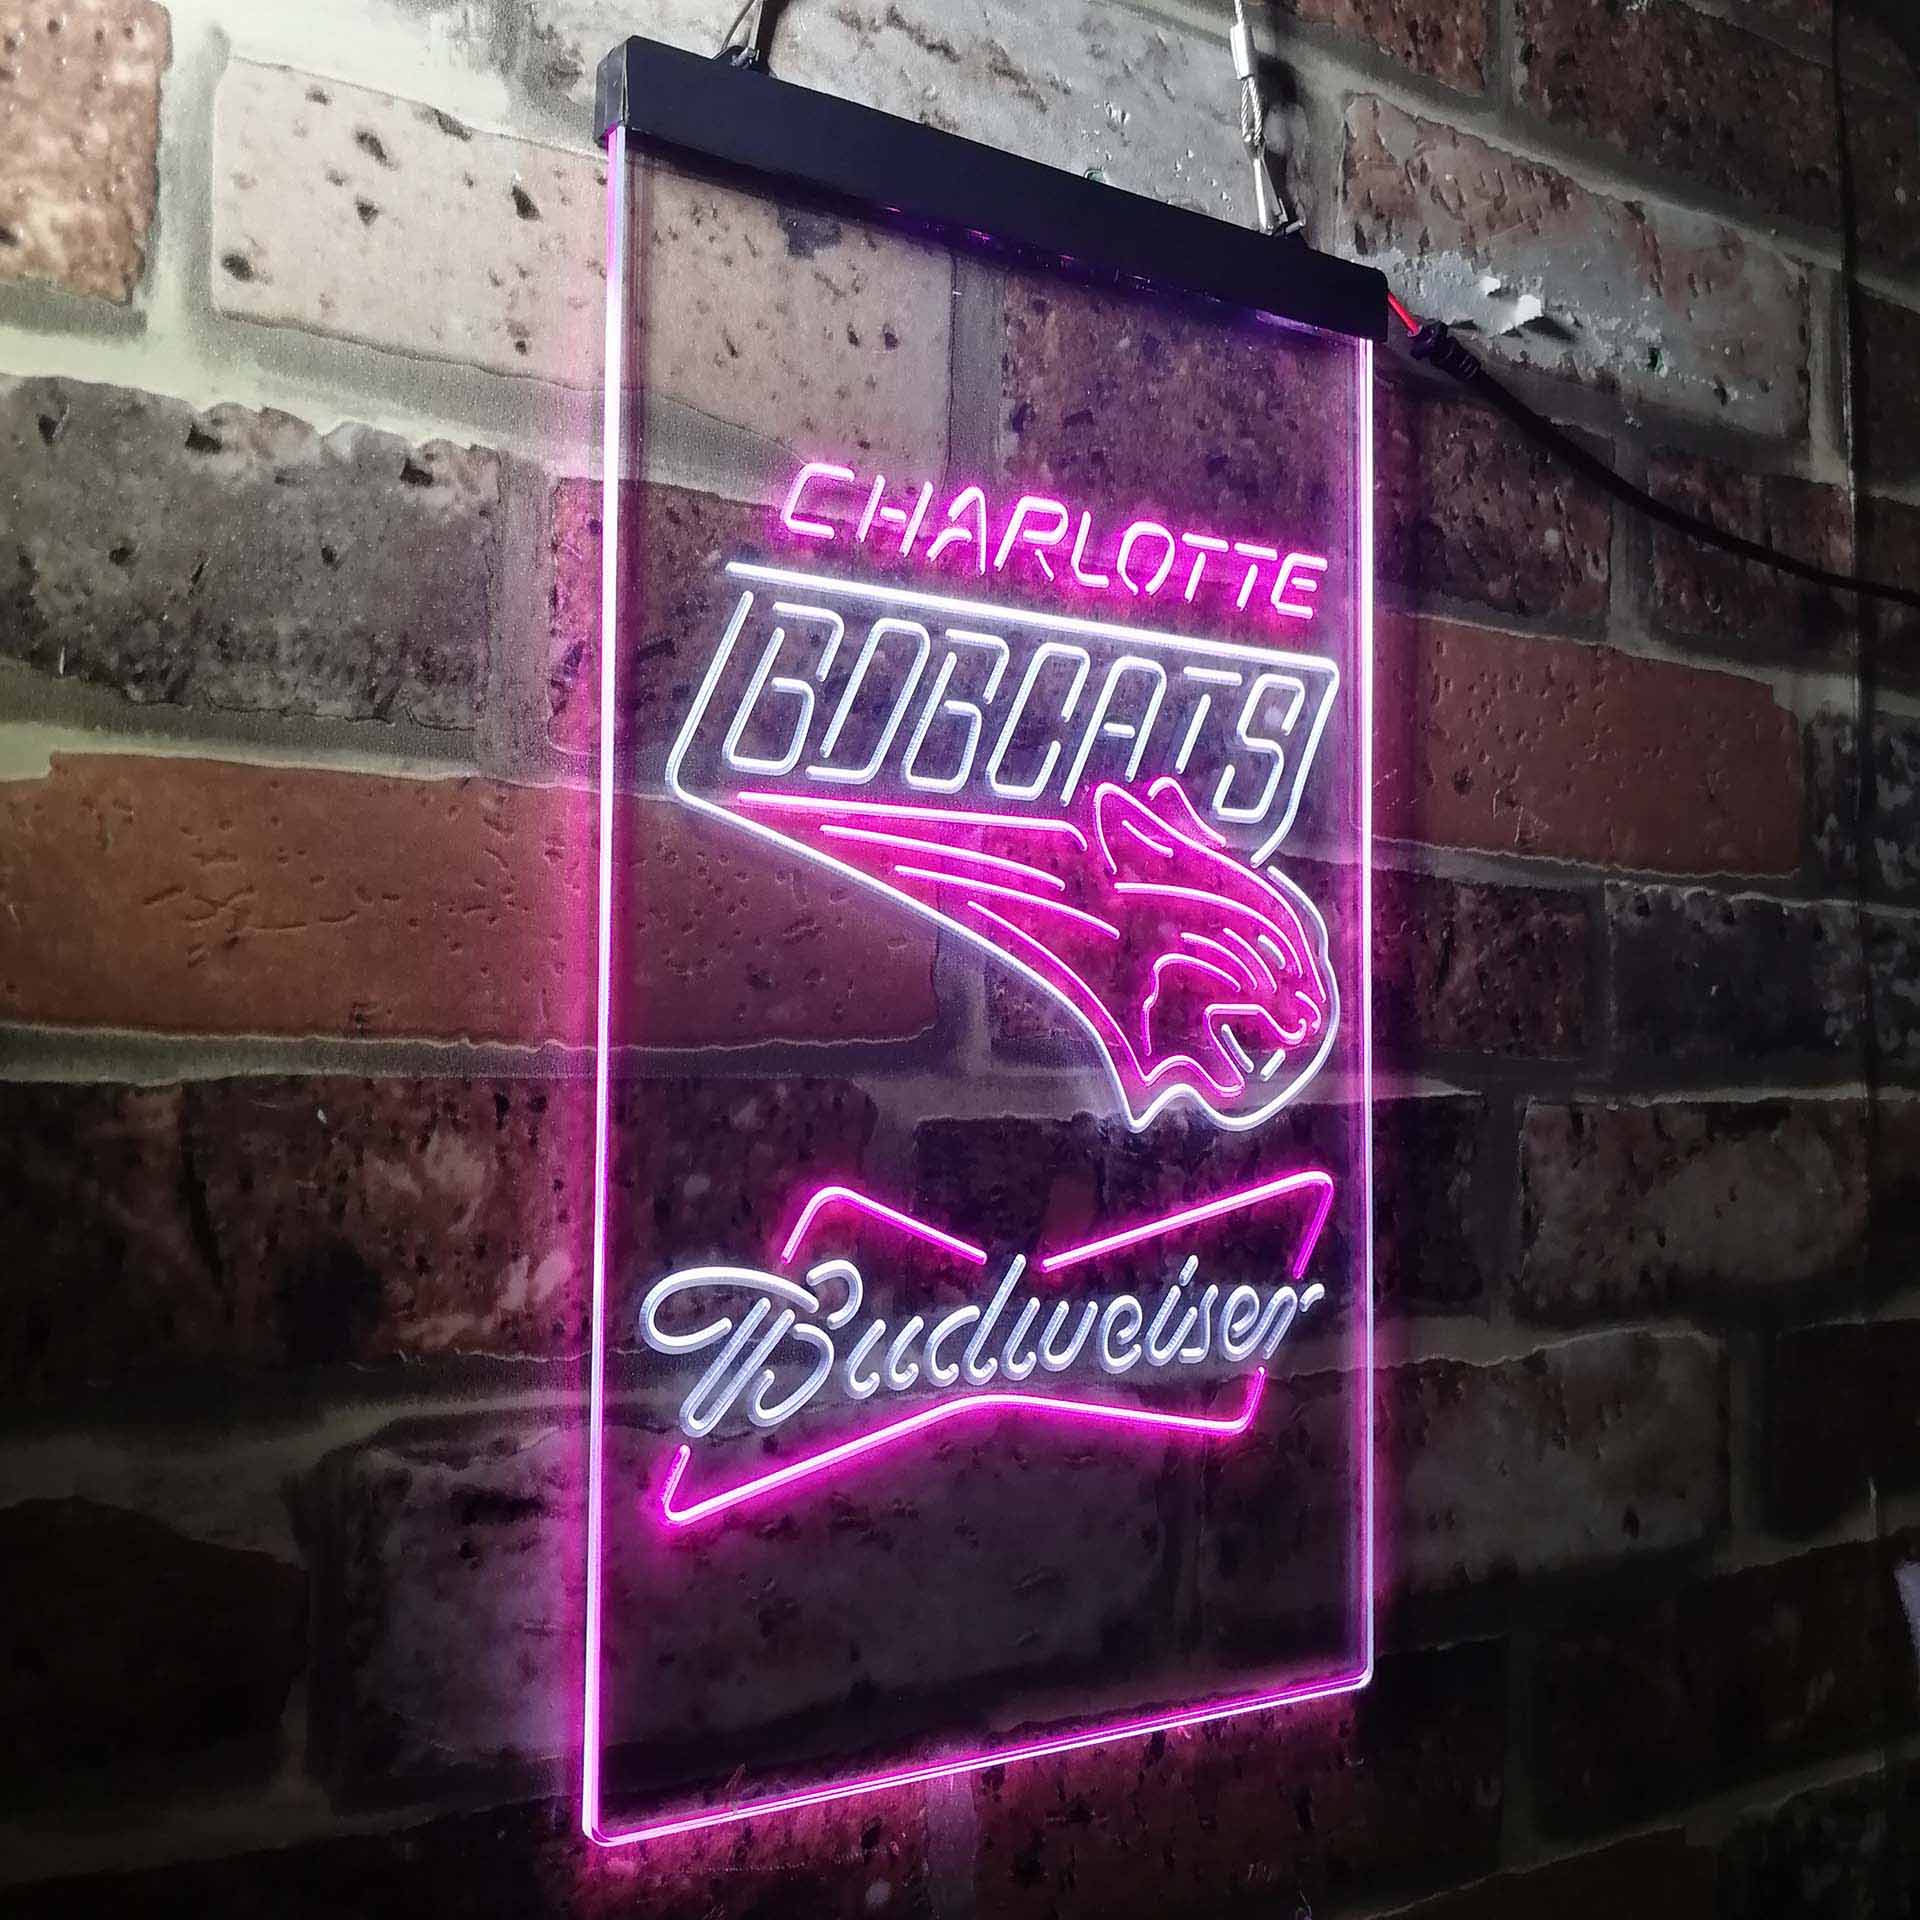 Charlotte Bobcat Budweiser LED Neon Sign